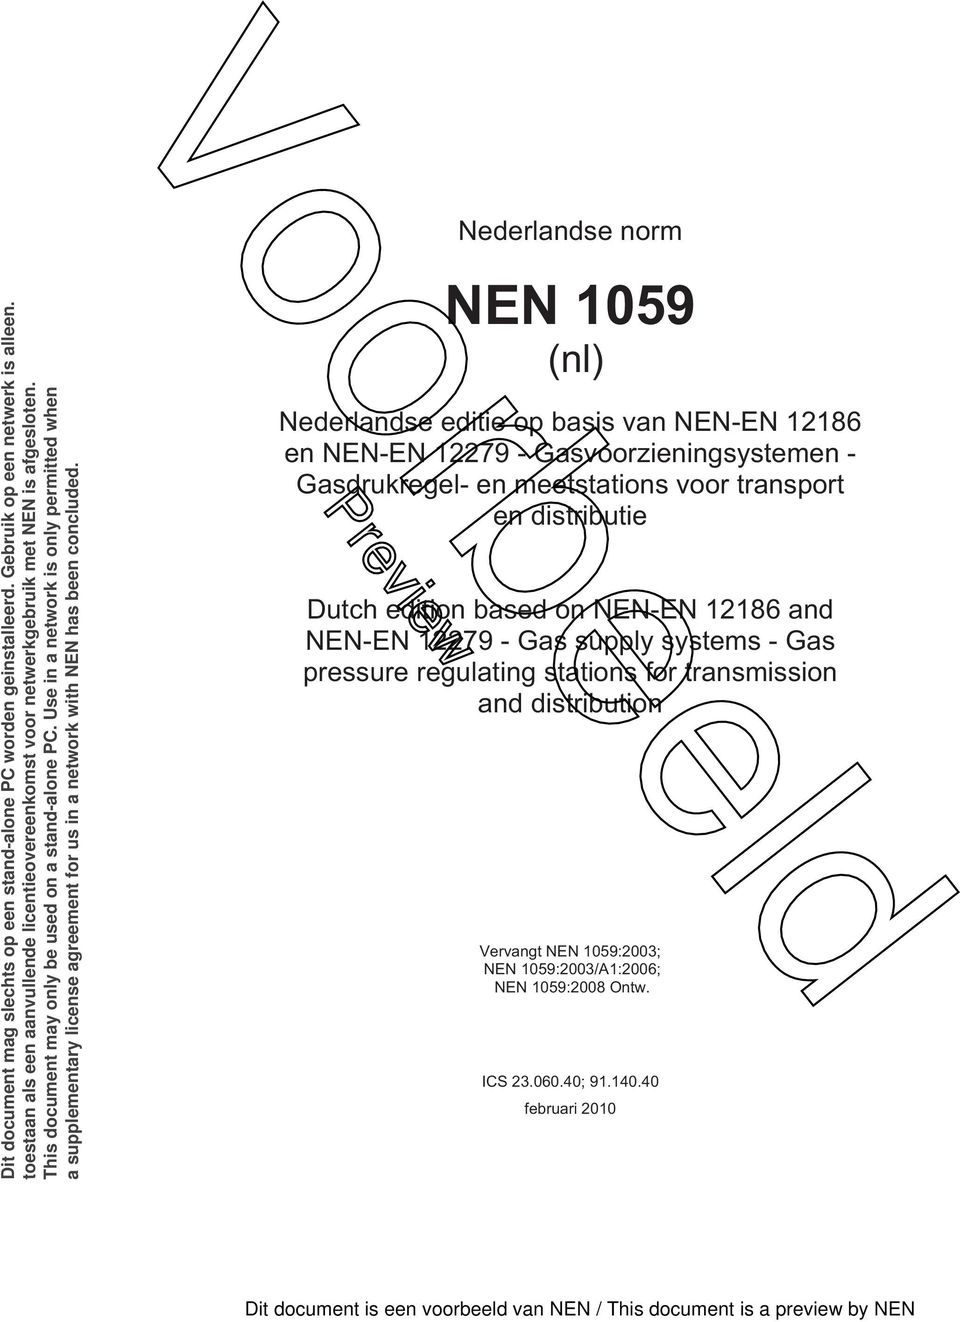 Nederlandse norm NEN 1059 (nl) Nederlandse editie op basis van NEN-EN 12186 en NEN-EN 12279 - Gasvoorzieningsystemen - Gasdrukregel- en meetstations voor transport en distributie Dutch edition based